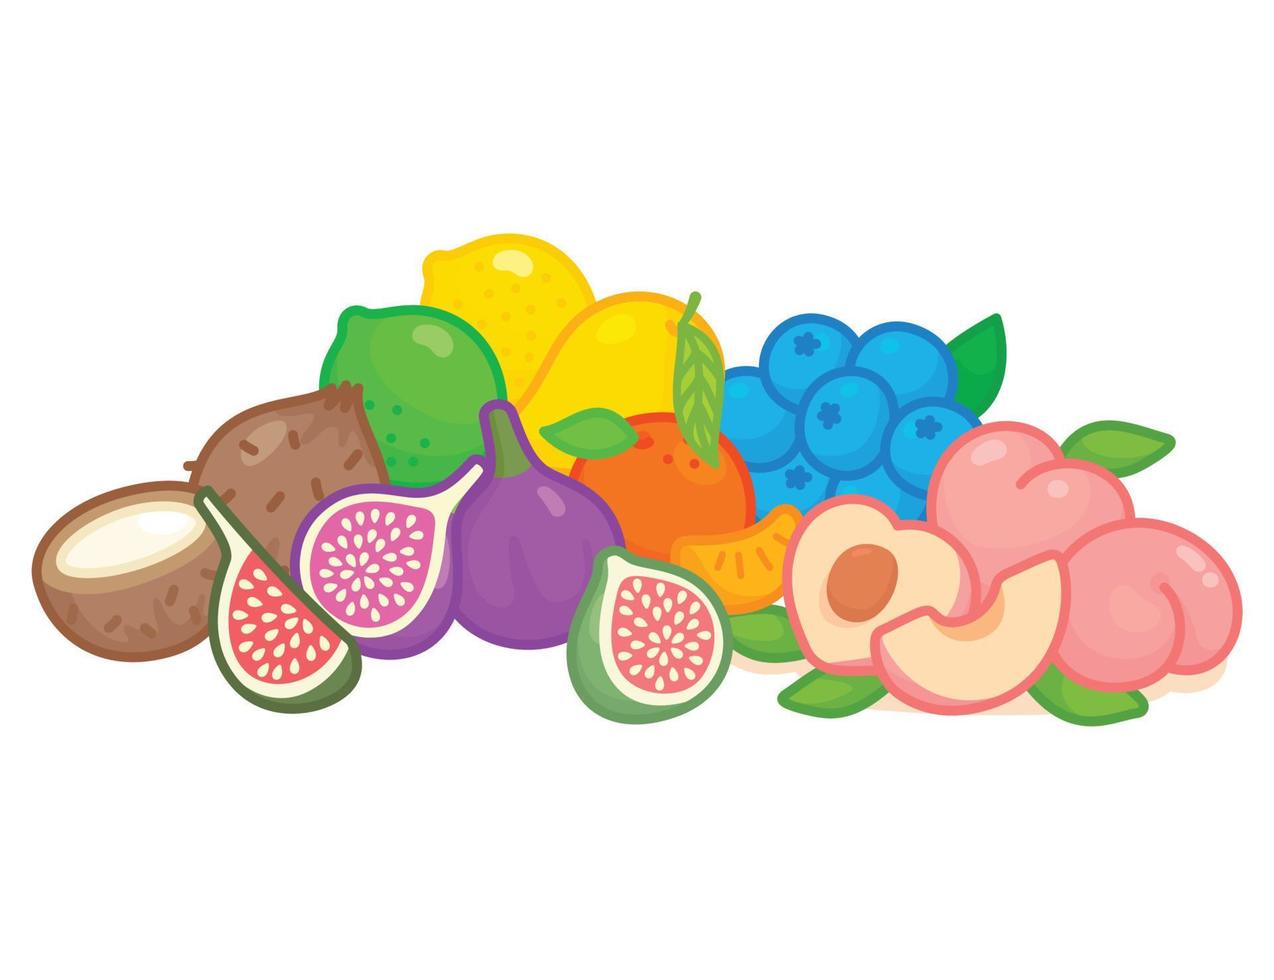 fruits arc-en-ciel kawaii doodle illustration vectorielle de dessin animé plat vecteur